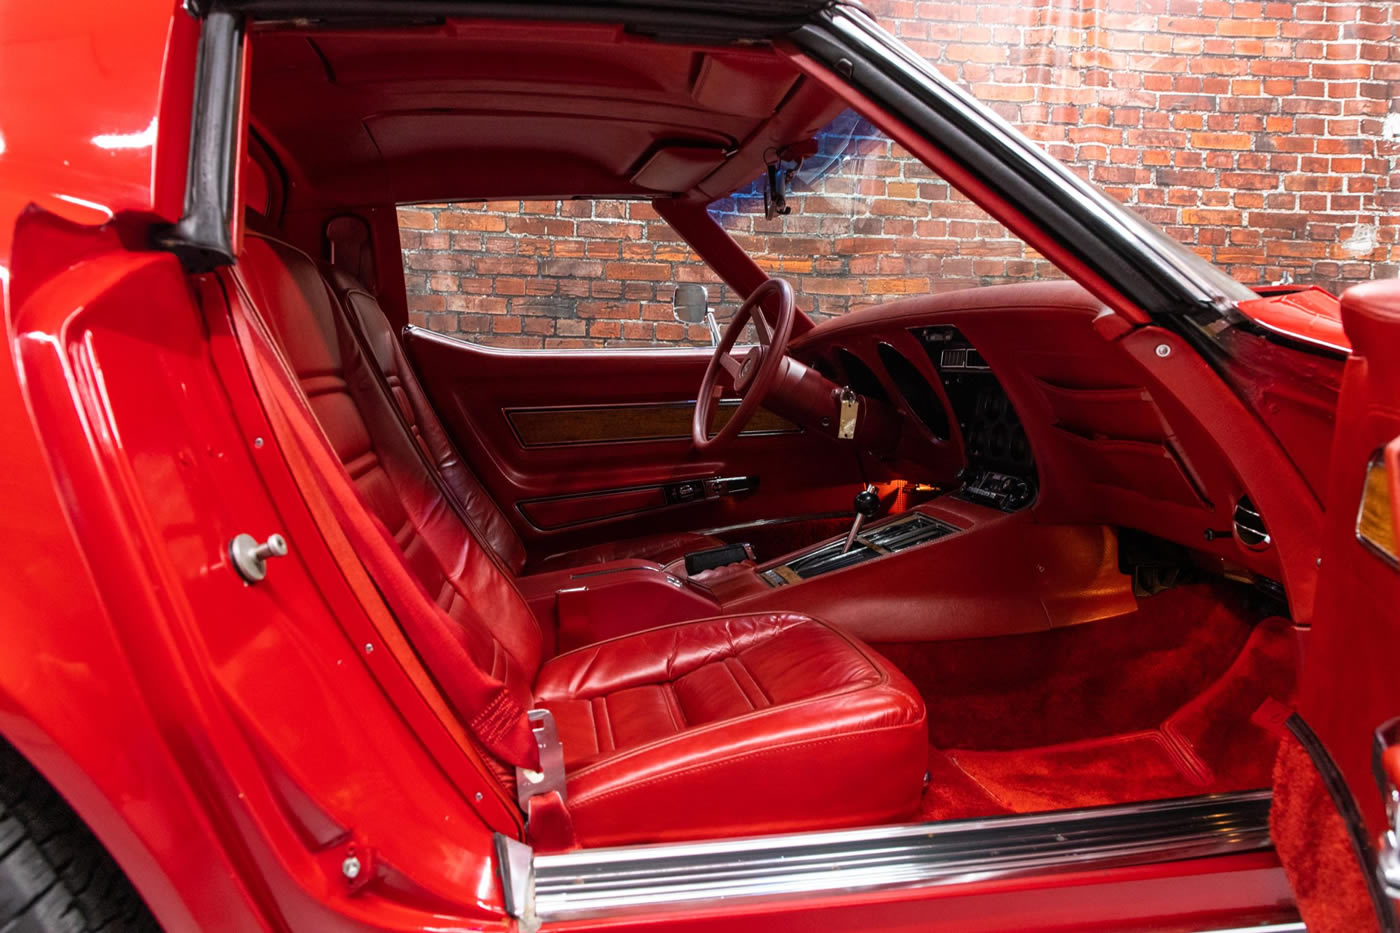 1976 Corvette in Medium Red